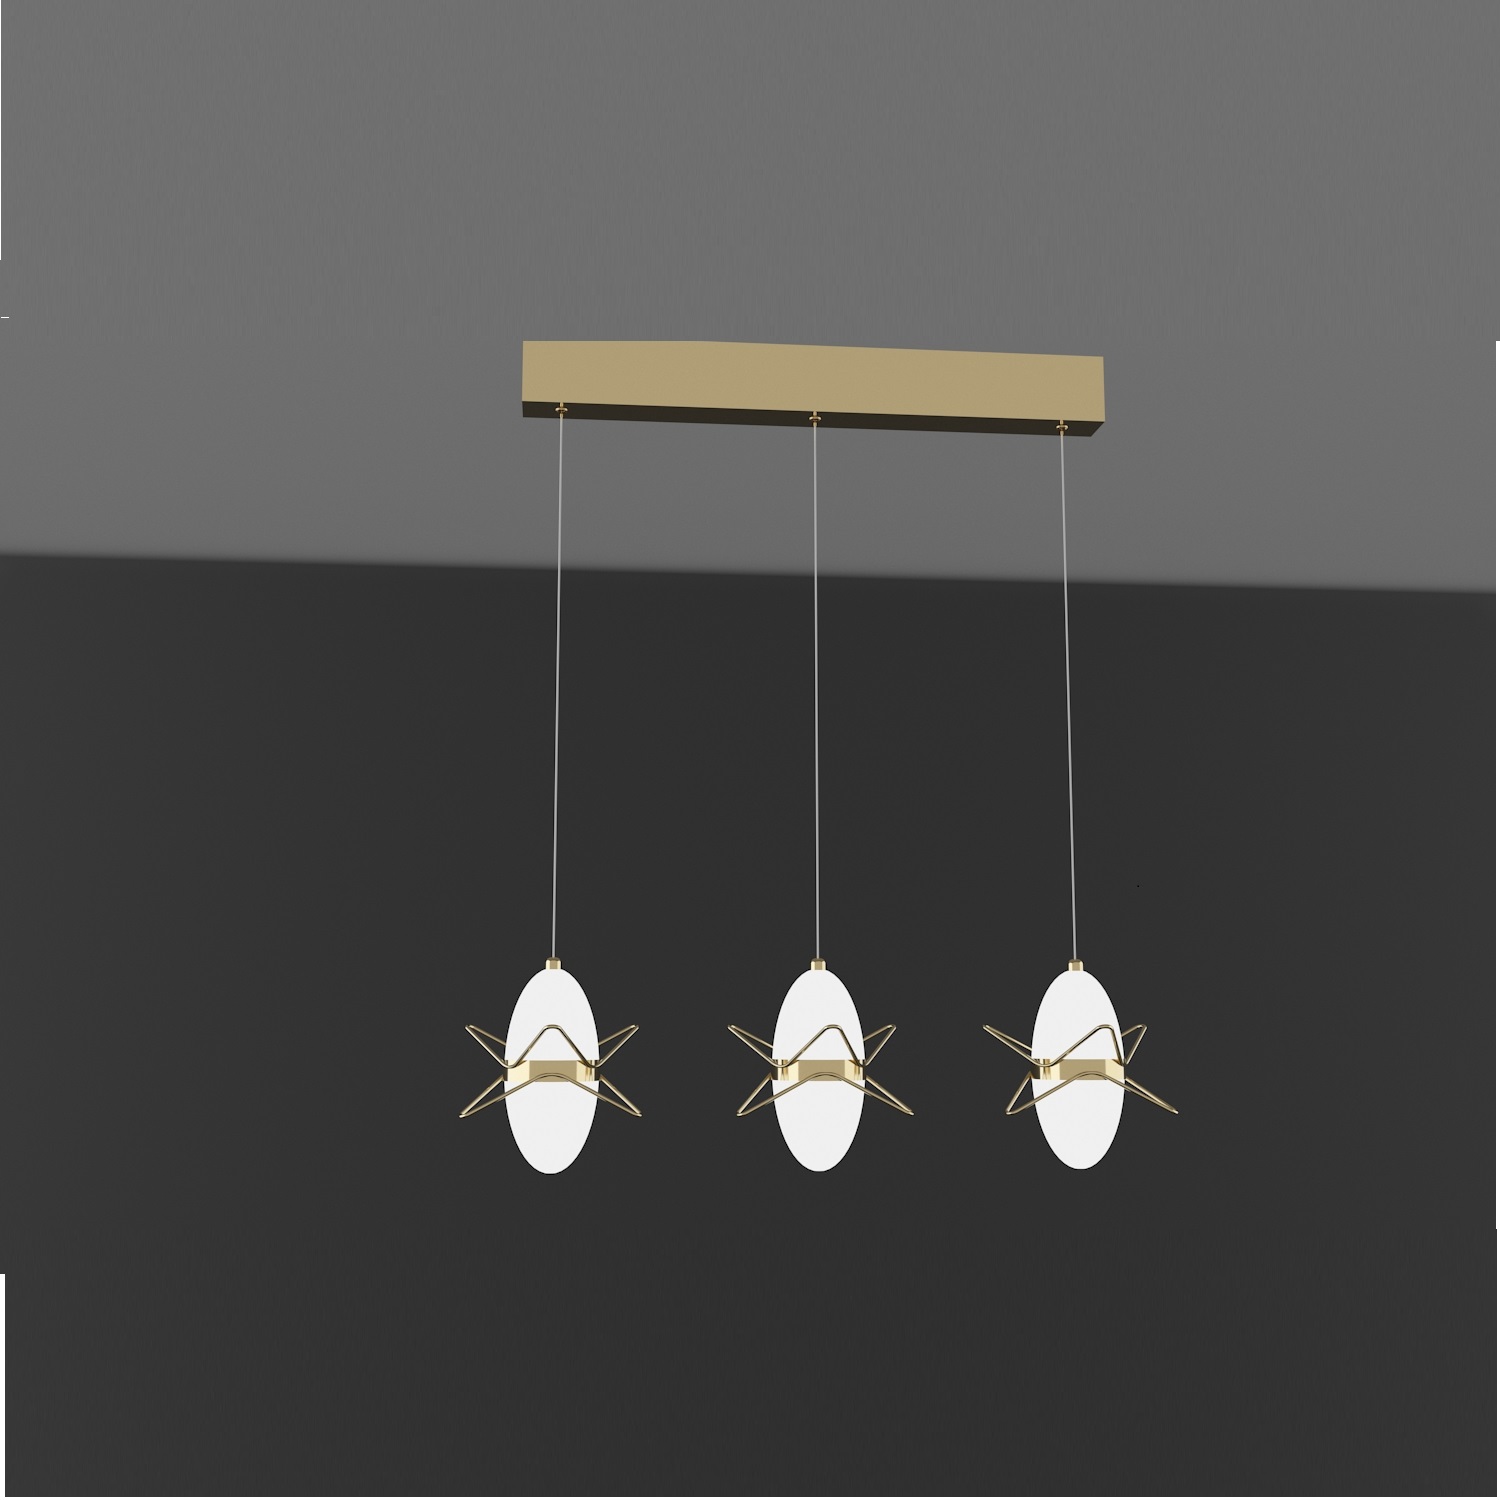 haibang,chandelier,simple,bedroom